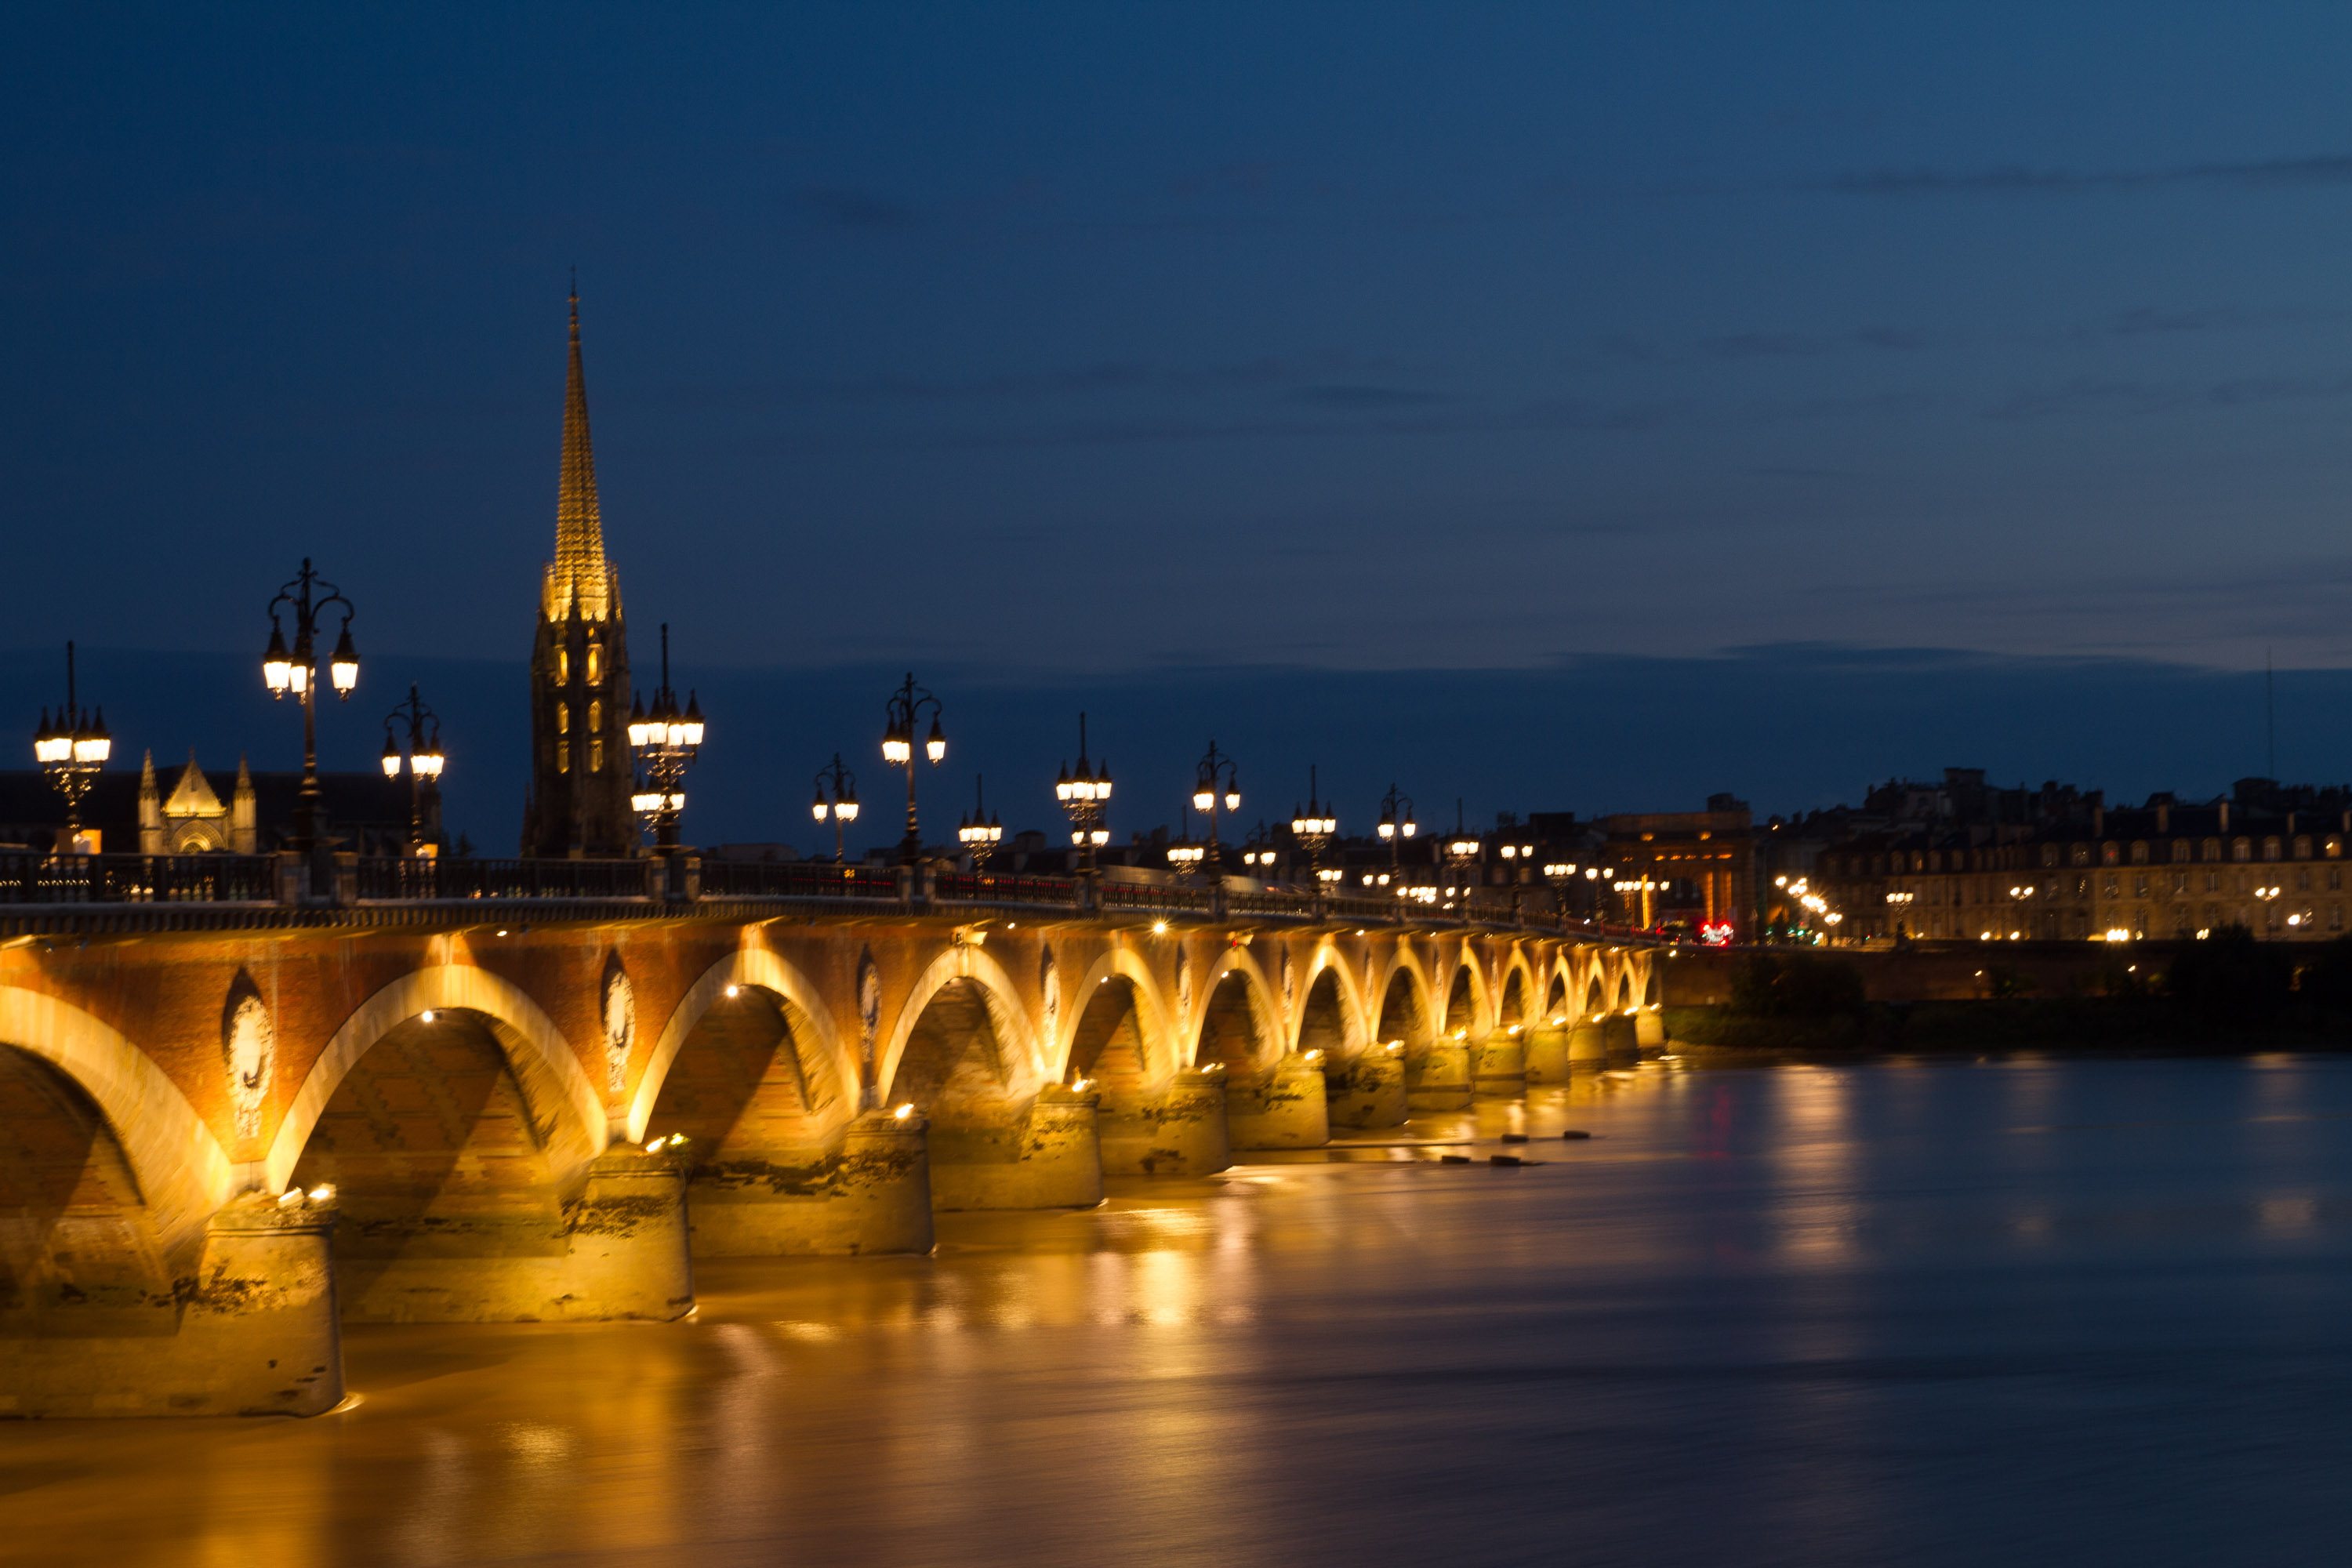 Vista nocturna del puente de piedra y la Basílica de San Miguel, Burdeos, Francia